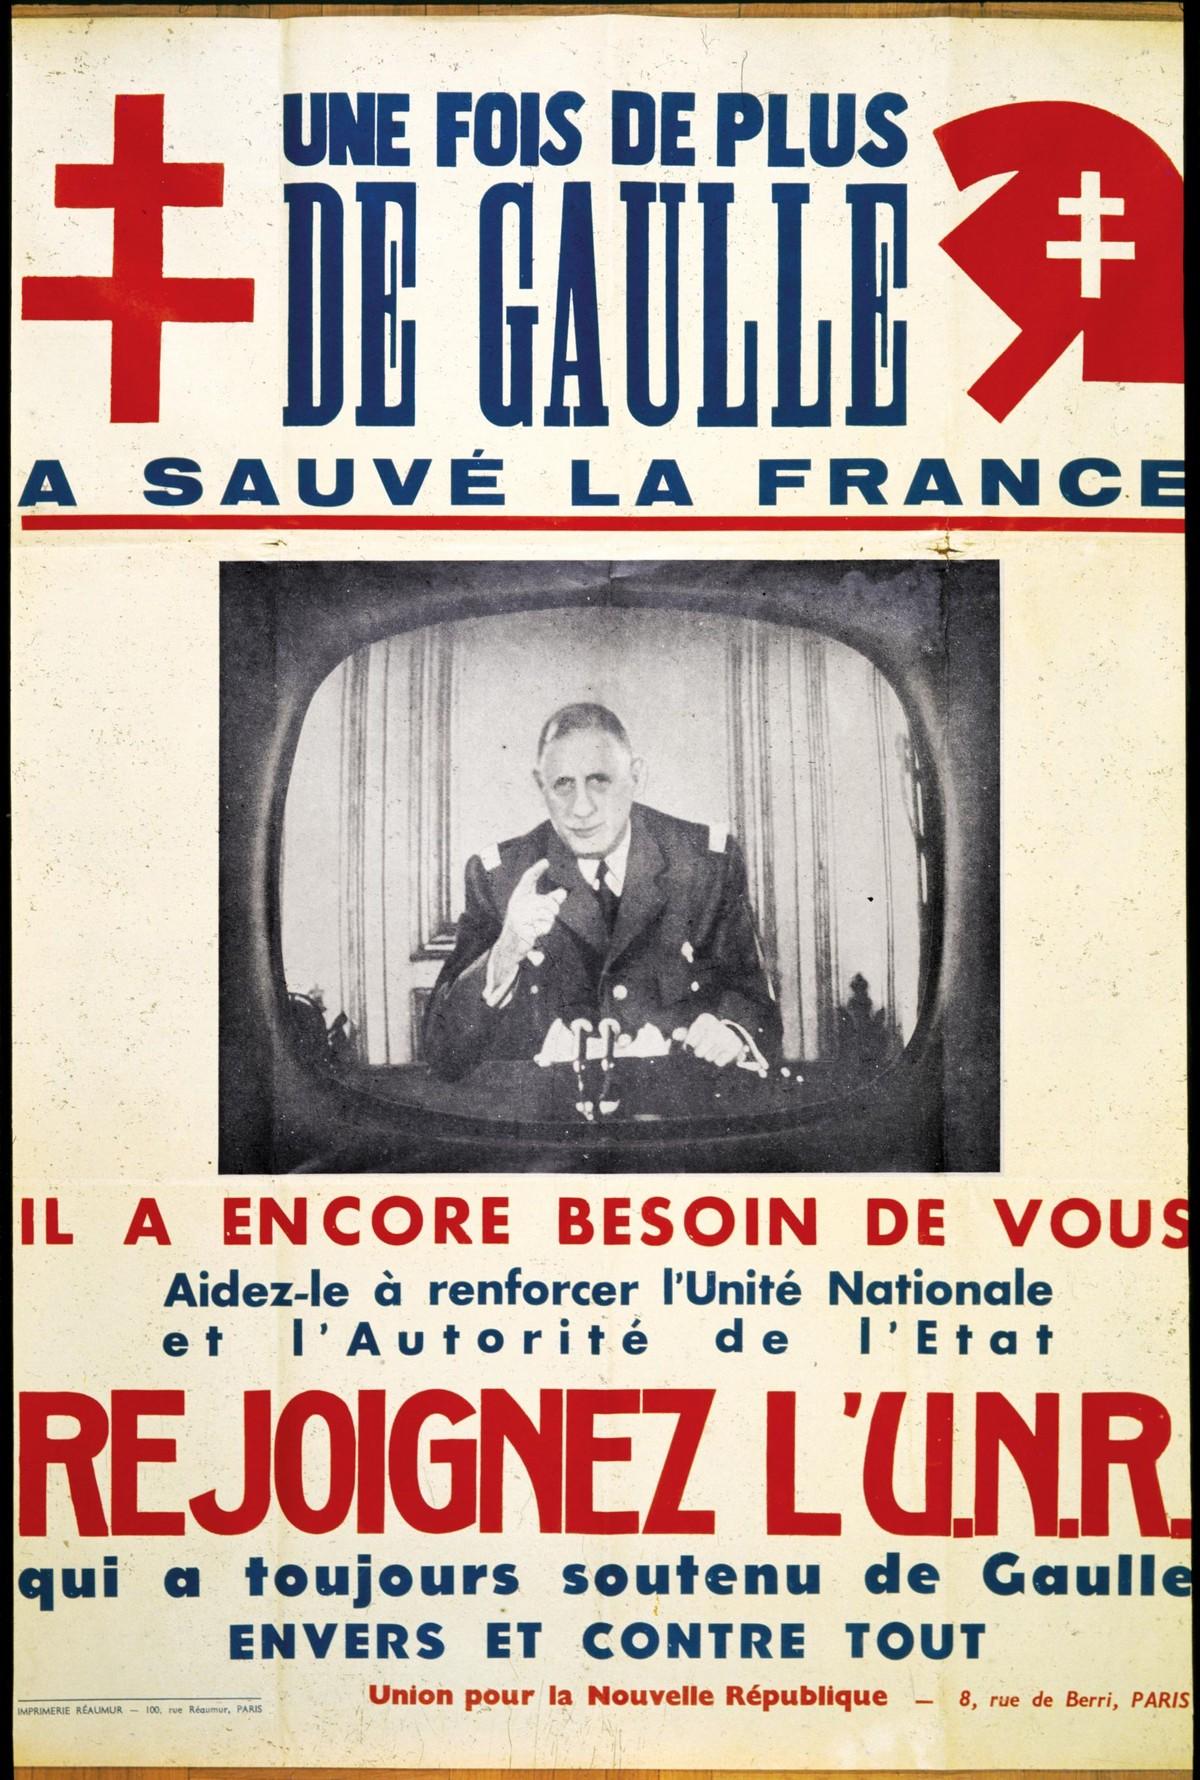 Affiche de l'UNR, parti politique de De Gaulle, 1958.